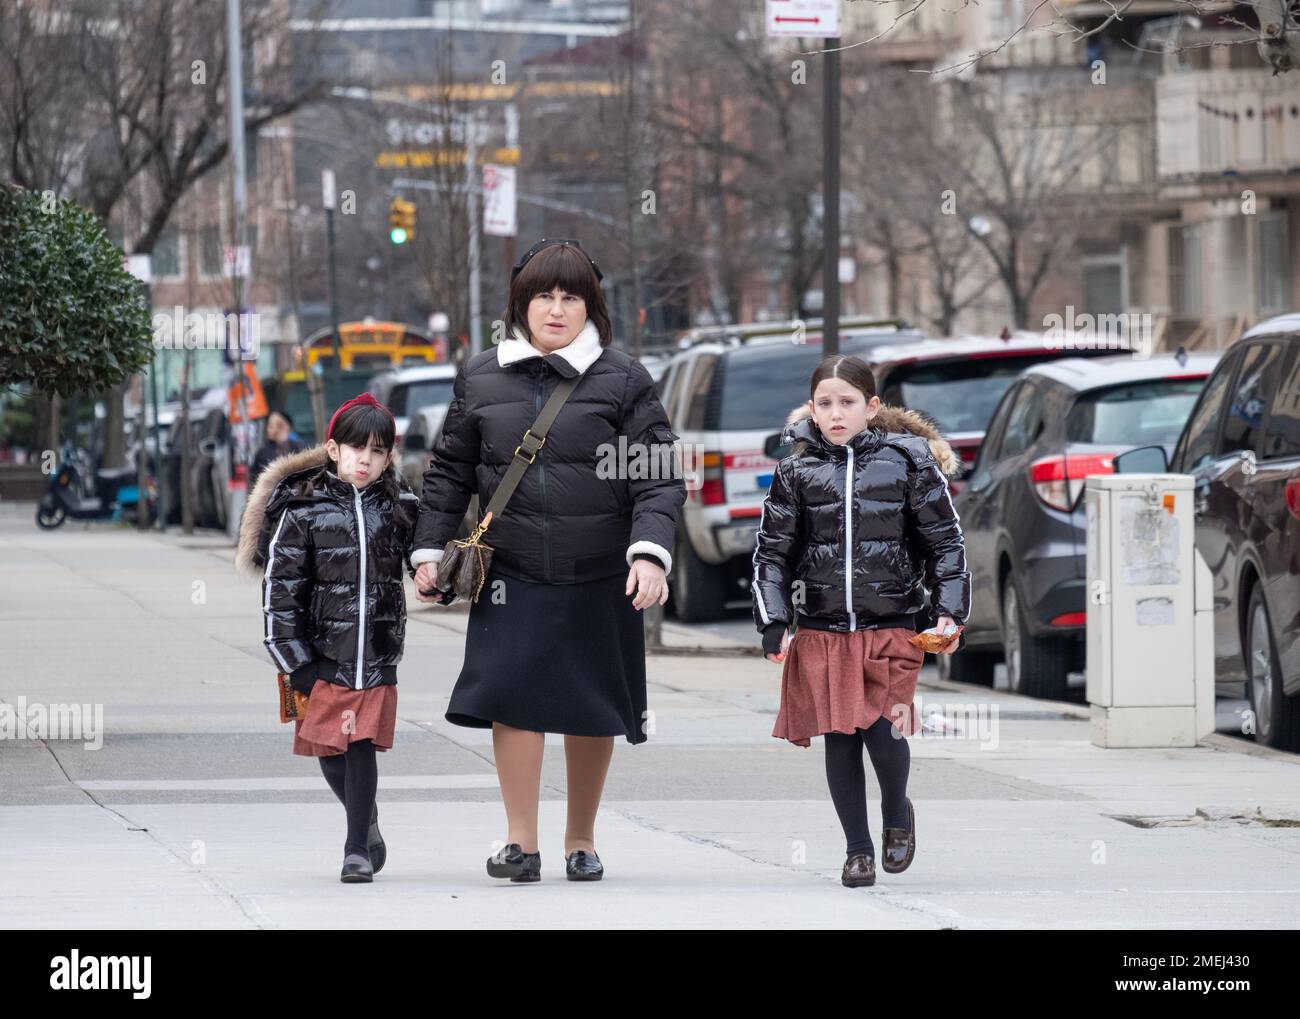 Une mère et 2 filles qui sont vêtues de la même façon, probablement parce que les jupes sont des uniformes d'école. À Brooklyn, New York. Banque D'Images